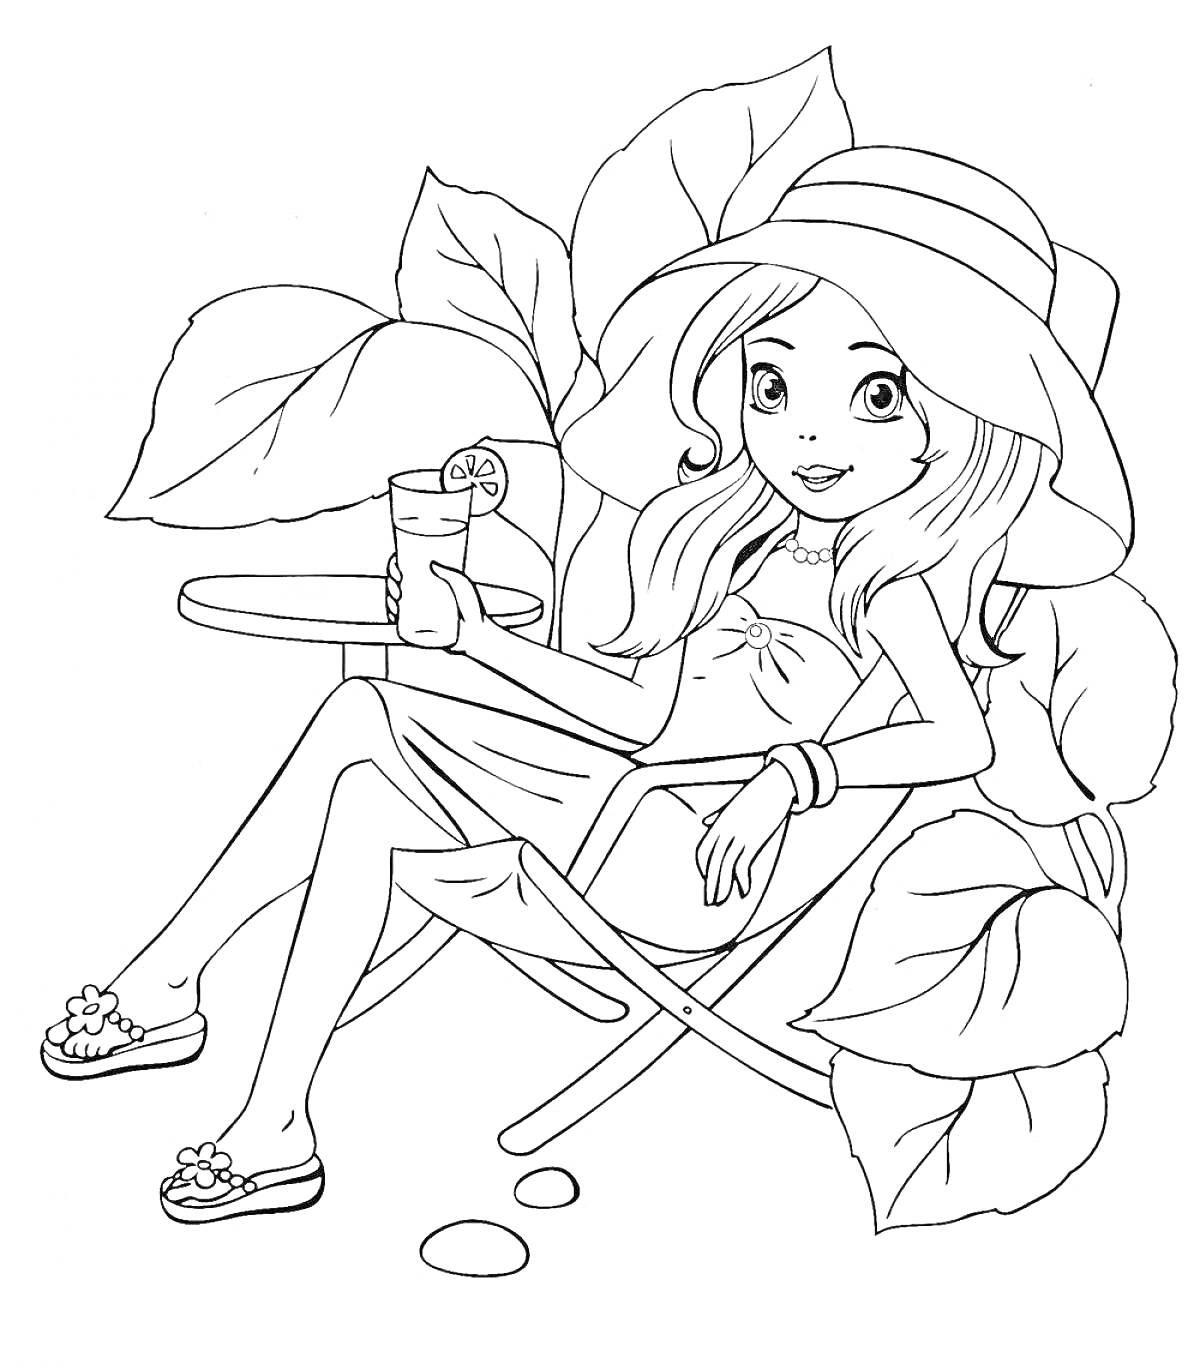 Девочка в саду на стуле с напитком, в шляпе и сарафане, цветы и листья на заднем плане